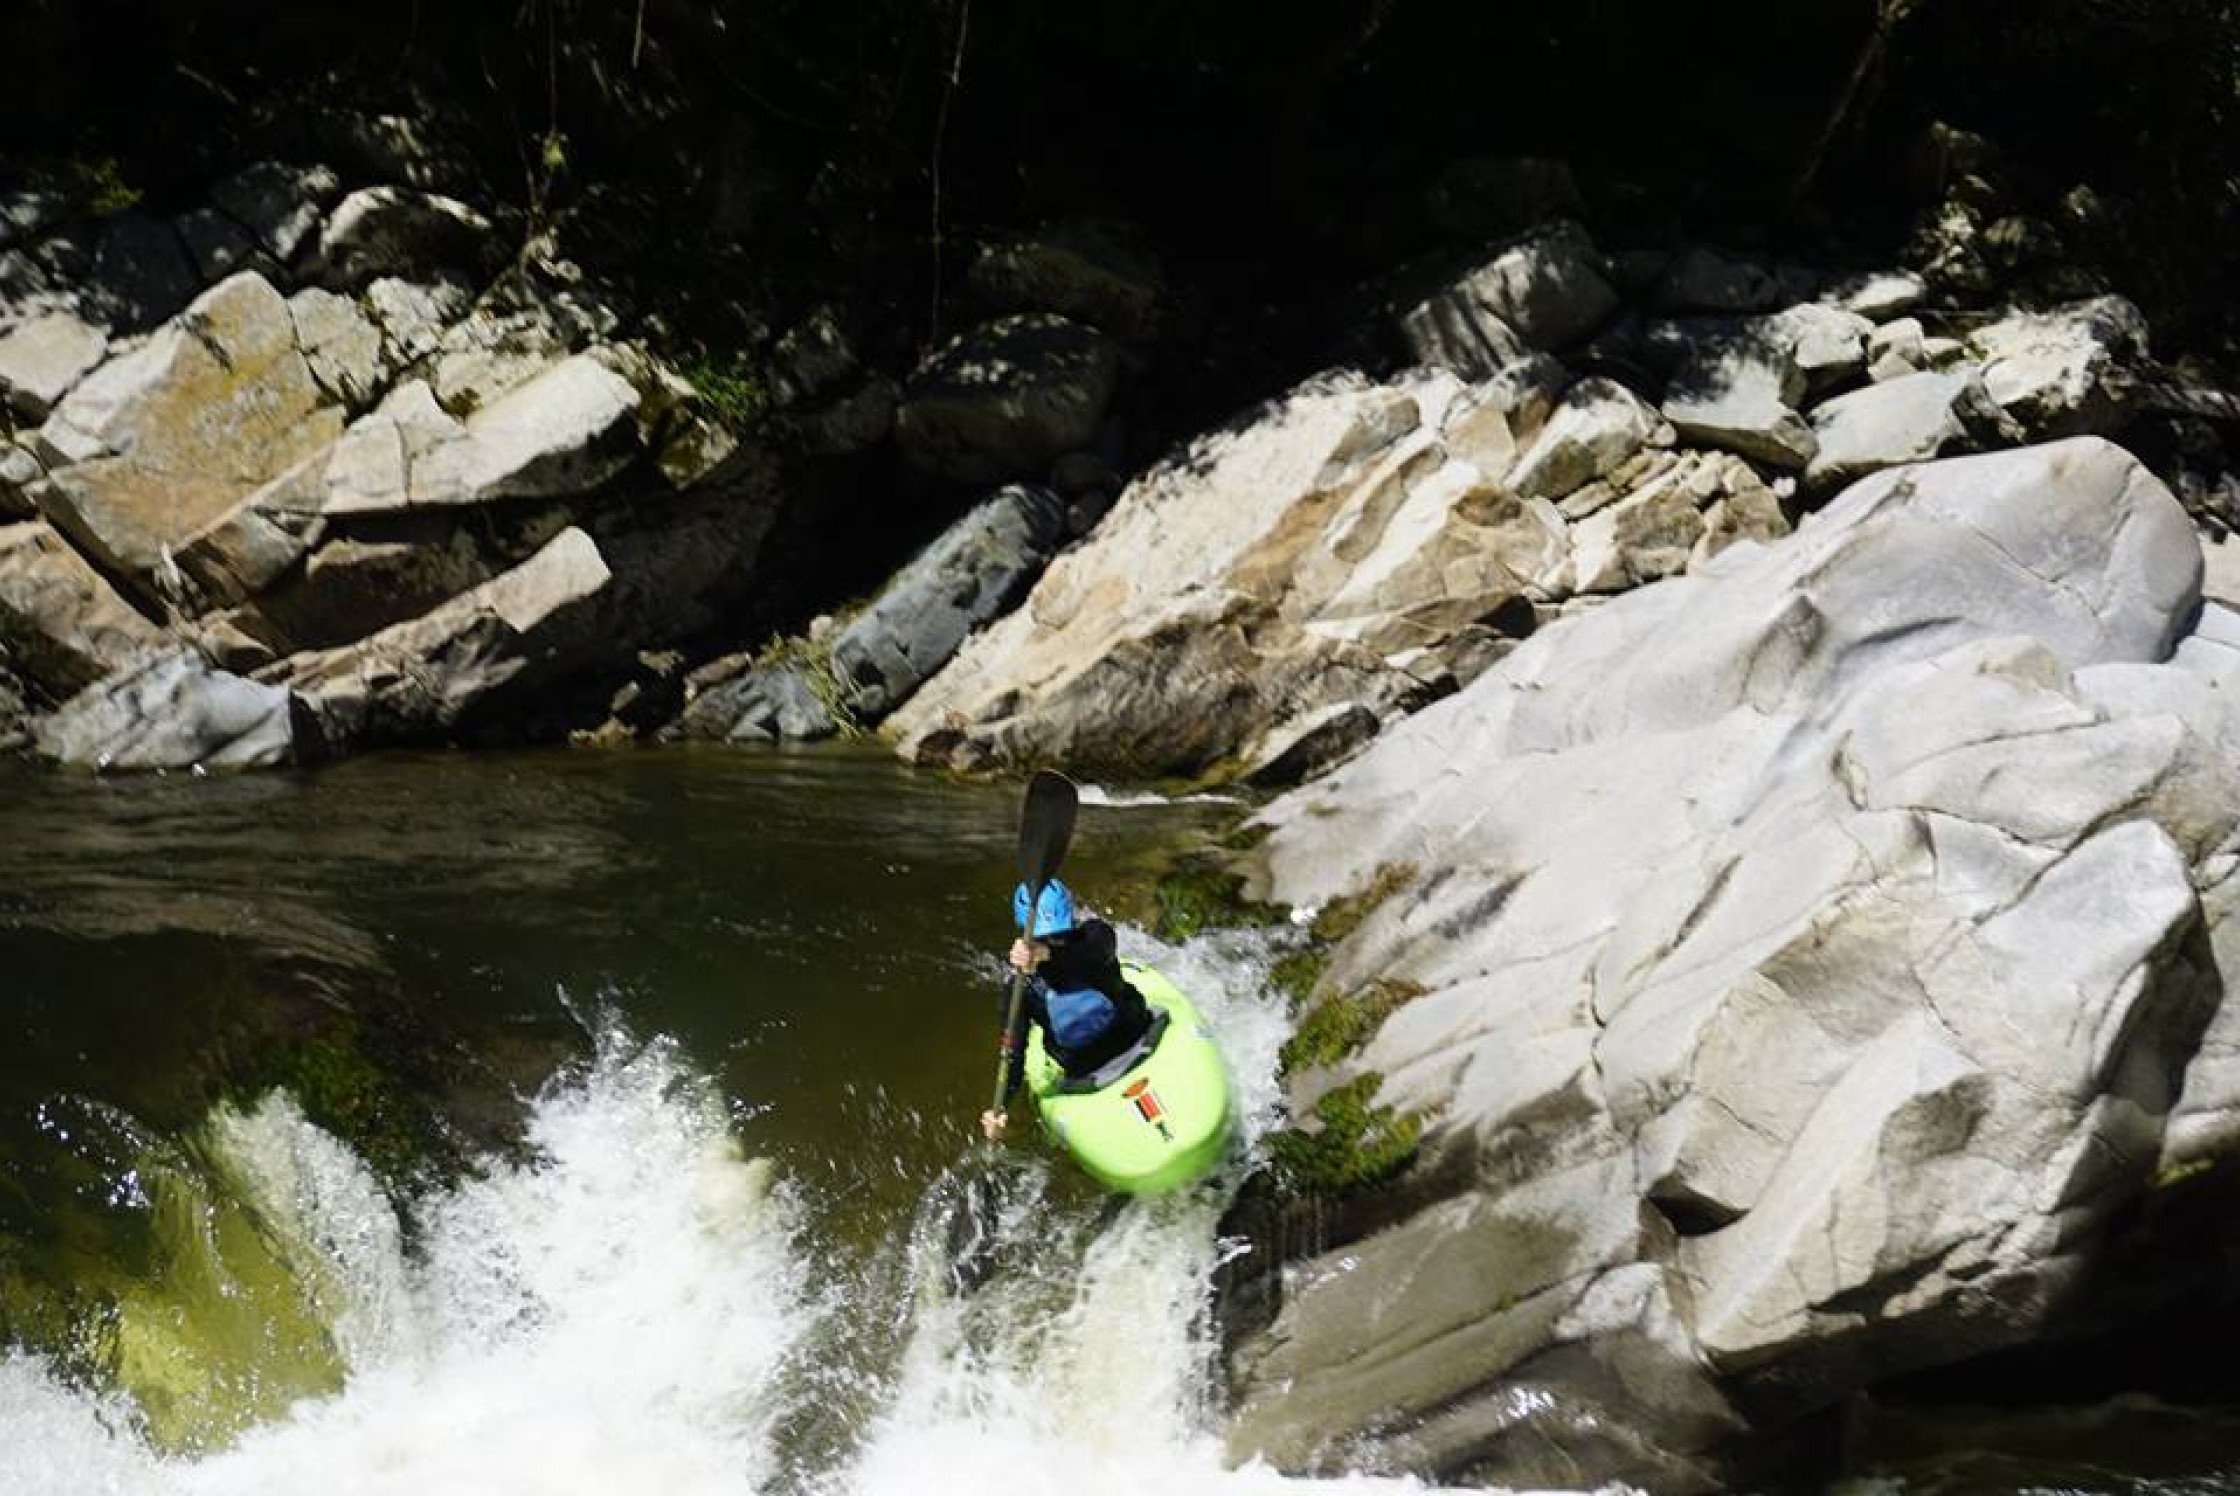 Erlebe die Magie der kolumbianischen Flüsse - Kajak und Packraft bringen dich nah an die Natur